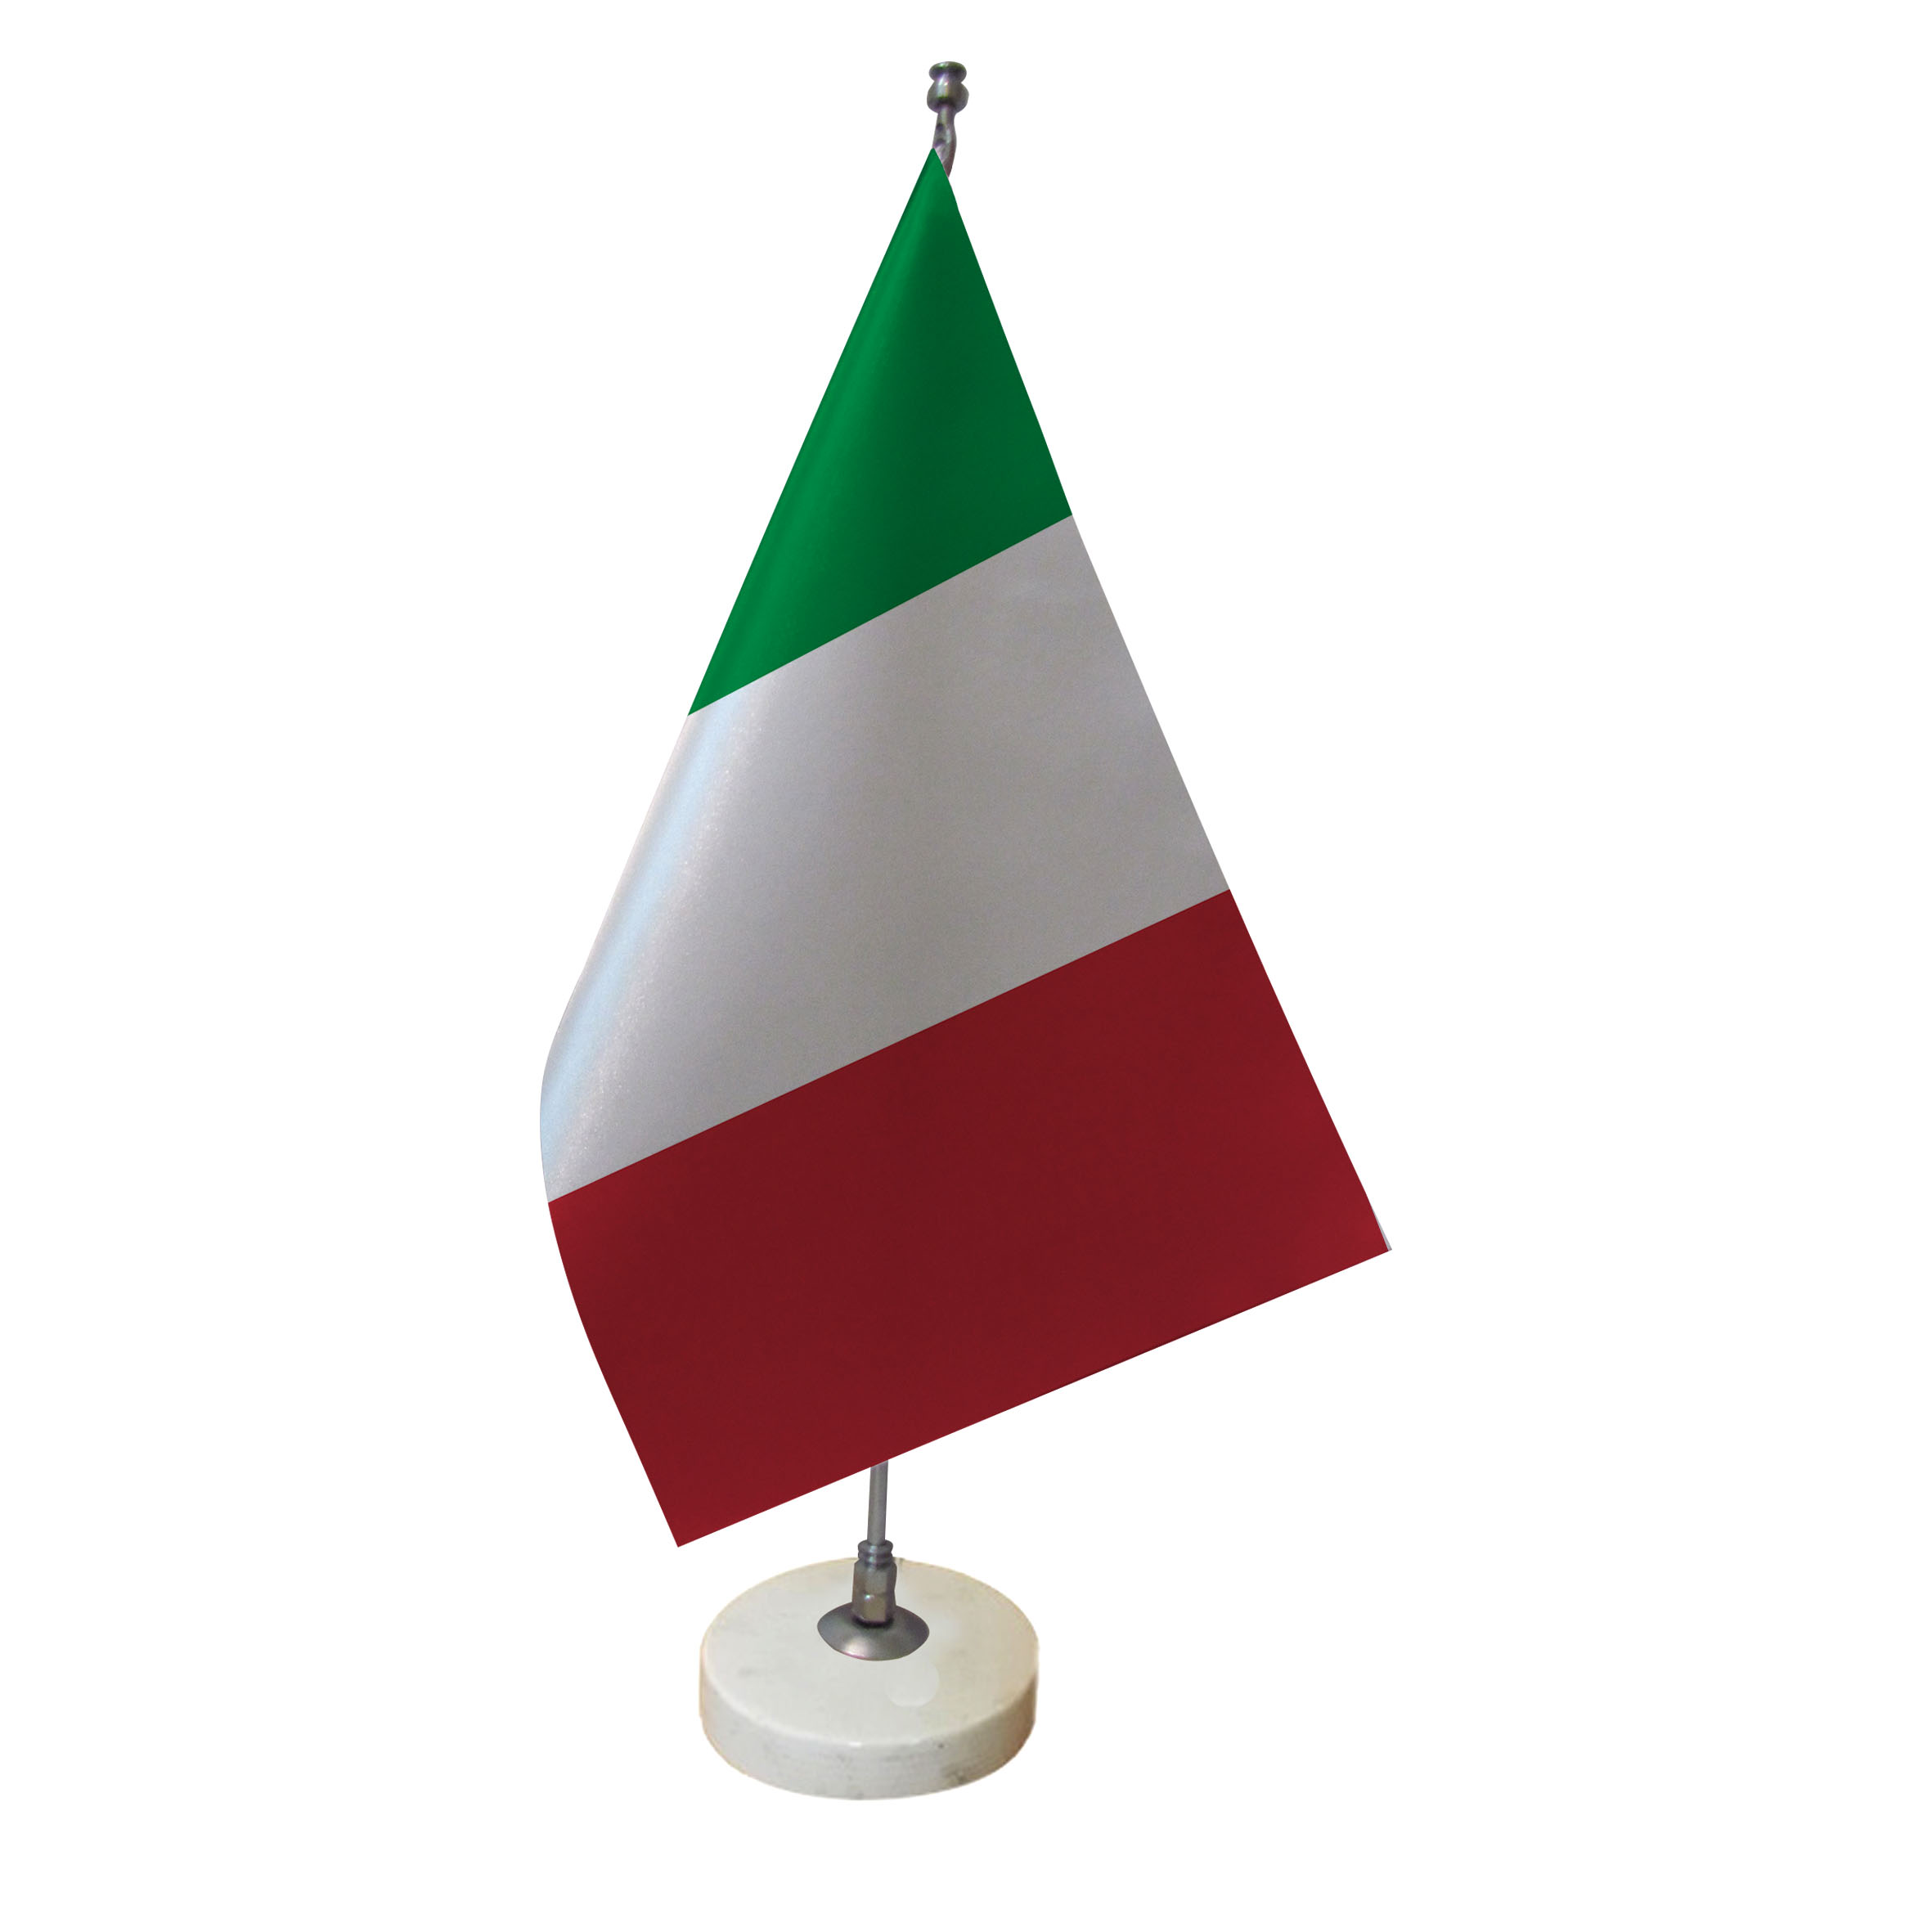 پرچم رومیزی طرح پرچم ایتالیا کد pr5